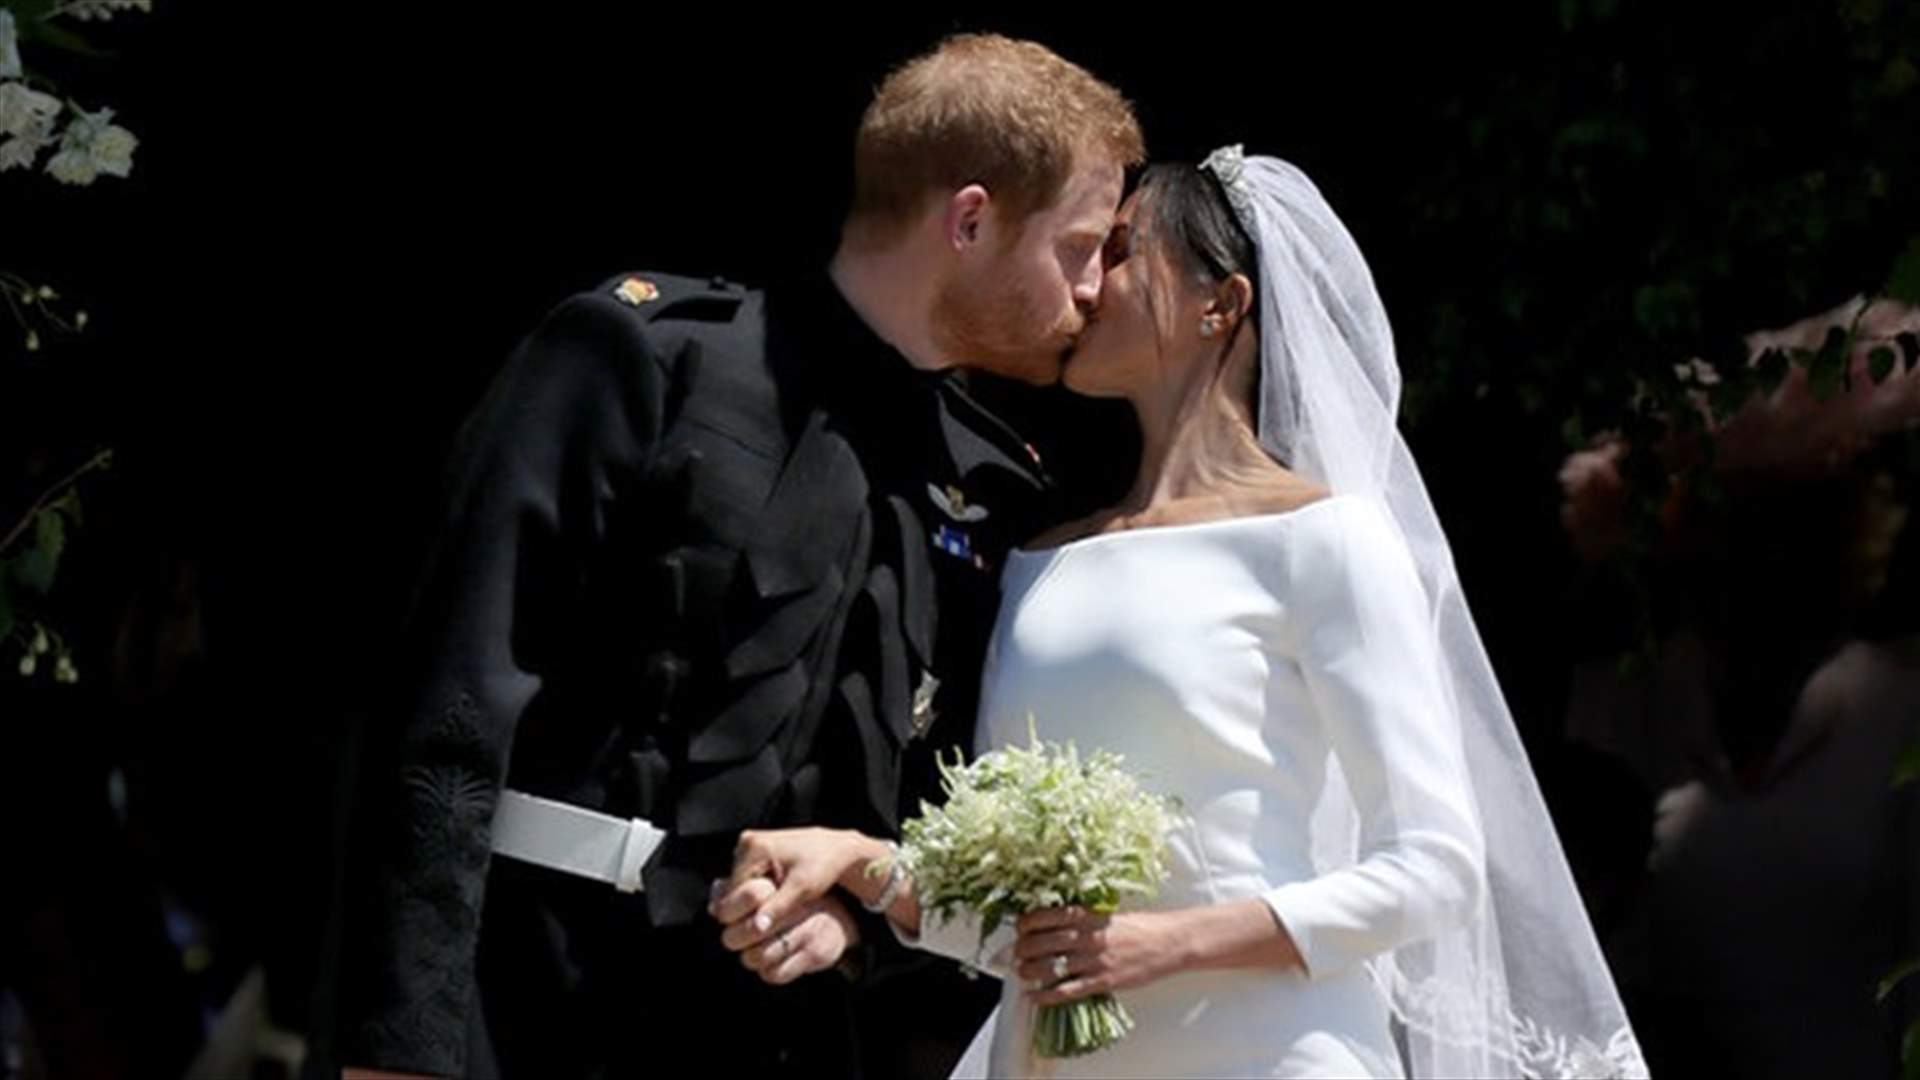 بالفيديو – قبلة حارّة بين الأمير هاري وميغان ماركل تشعل الانترنت